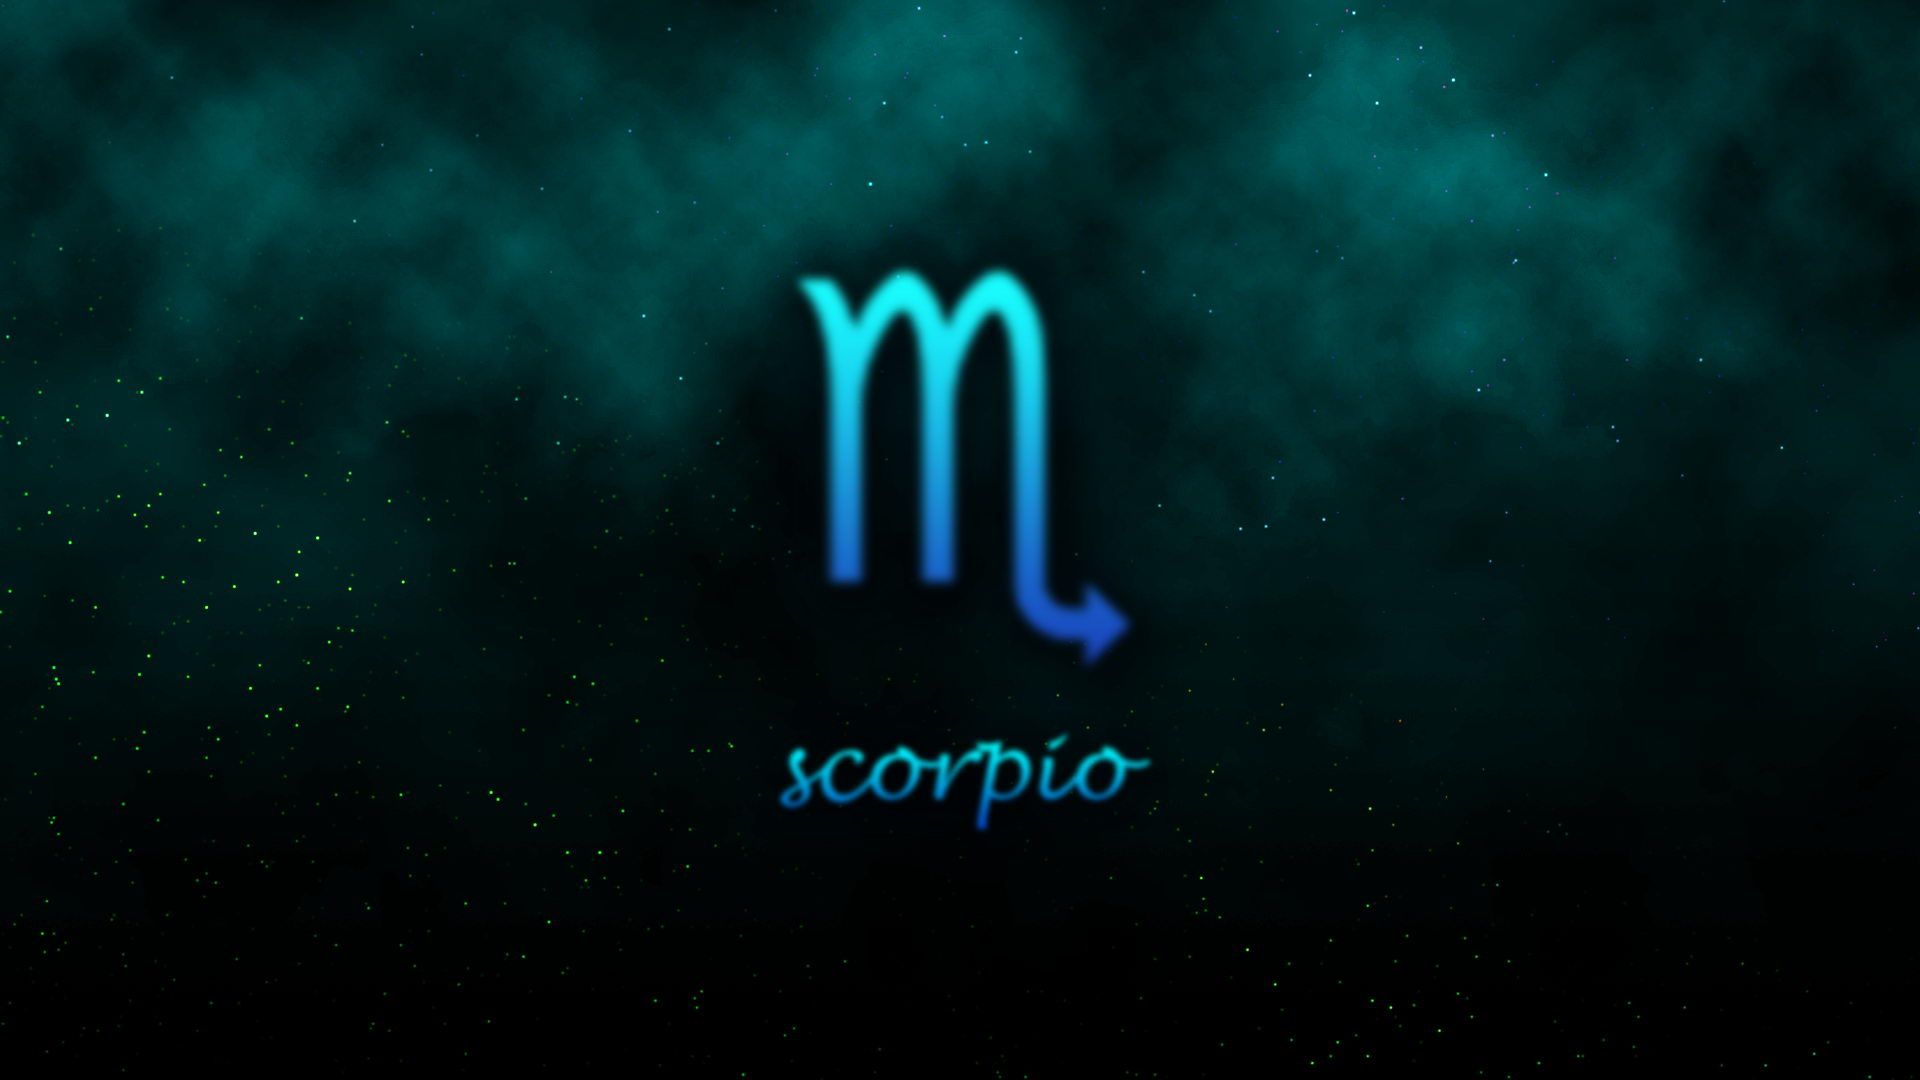 Scorpio Desktop Wallpaper, Scorpio Pictures Cool Backgrounds